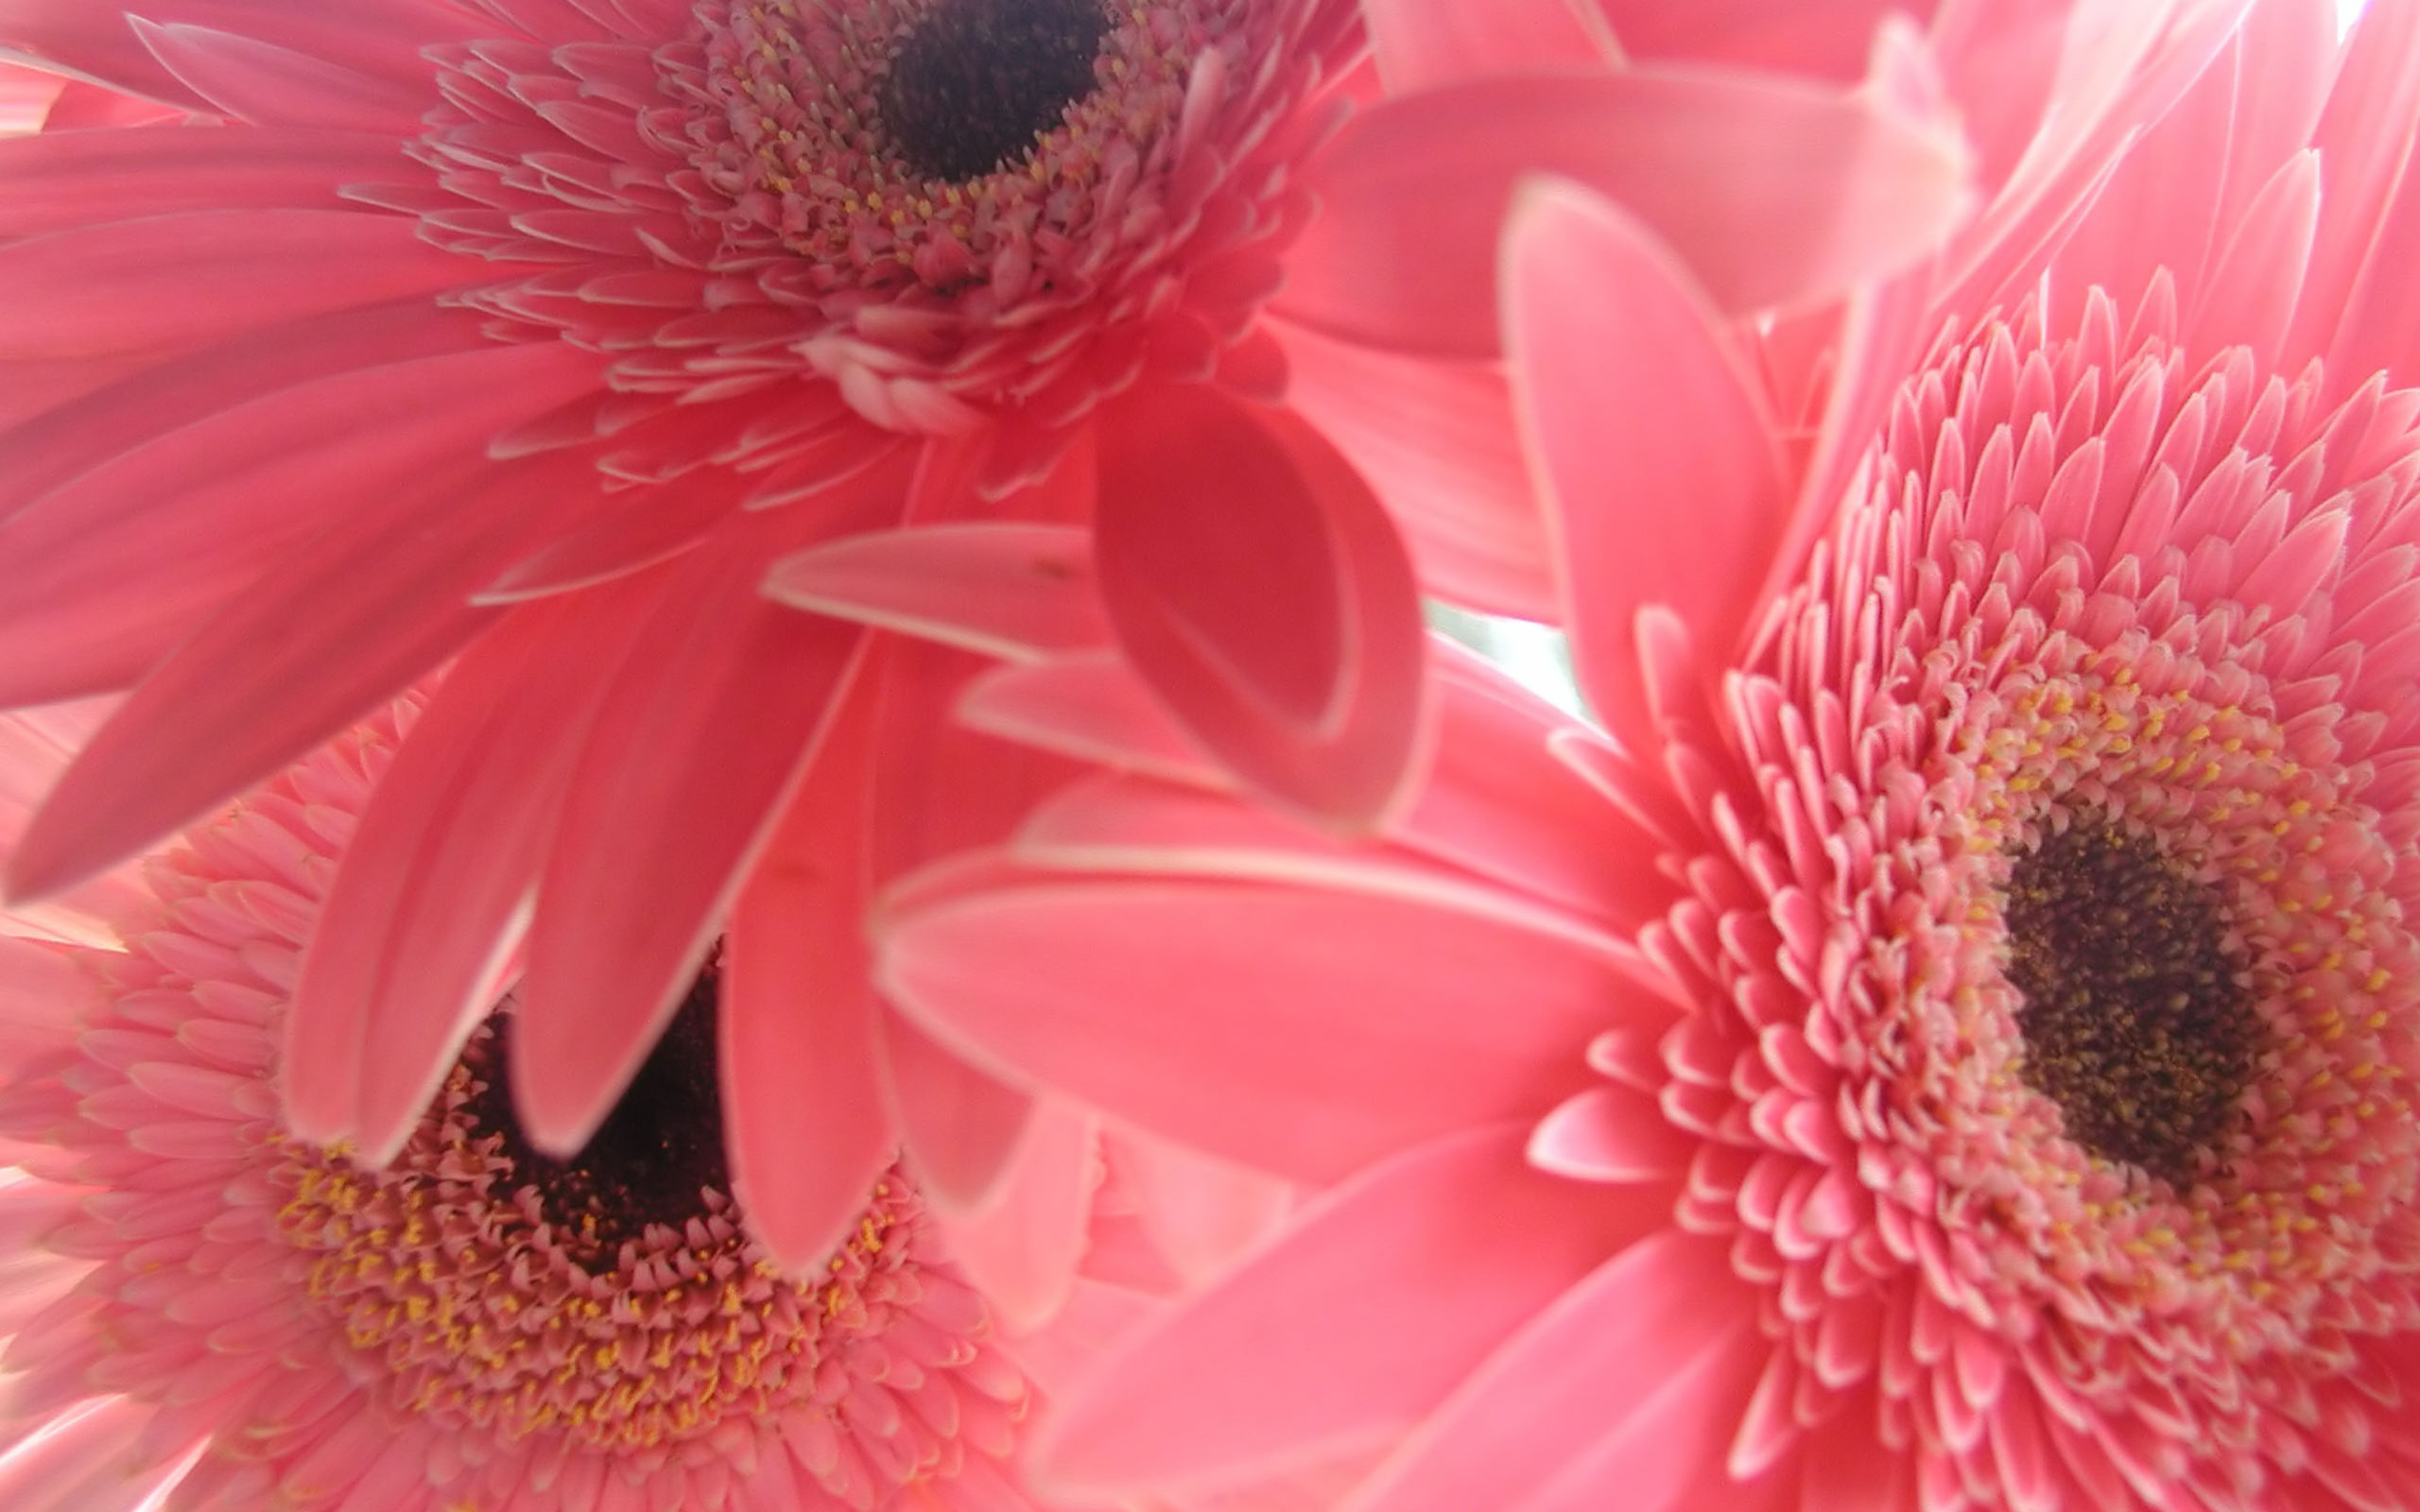 Flowers pink gerbera flower gerber daisy wallpaper 2560x1600 10406 2560x1600